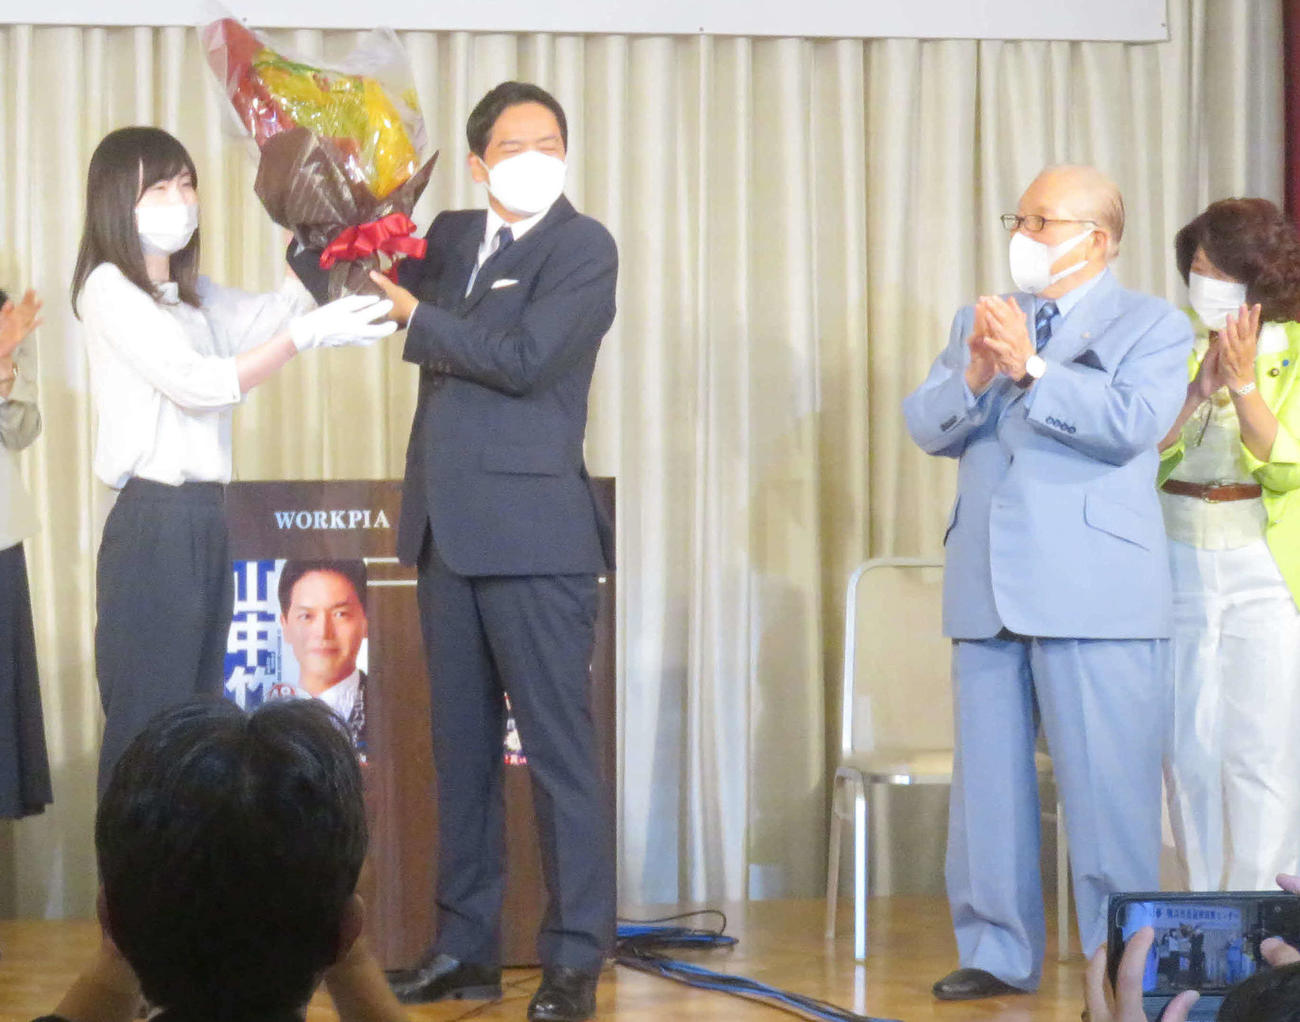 会見で花束を手にする山中竹春氏と、拍手する「ハマのドン」と呼ばれる藤木幸夫氏（右）（撮影・大上悟）